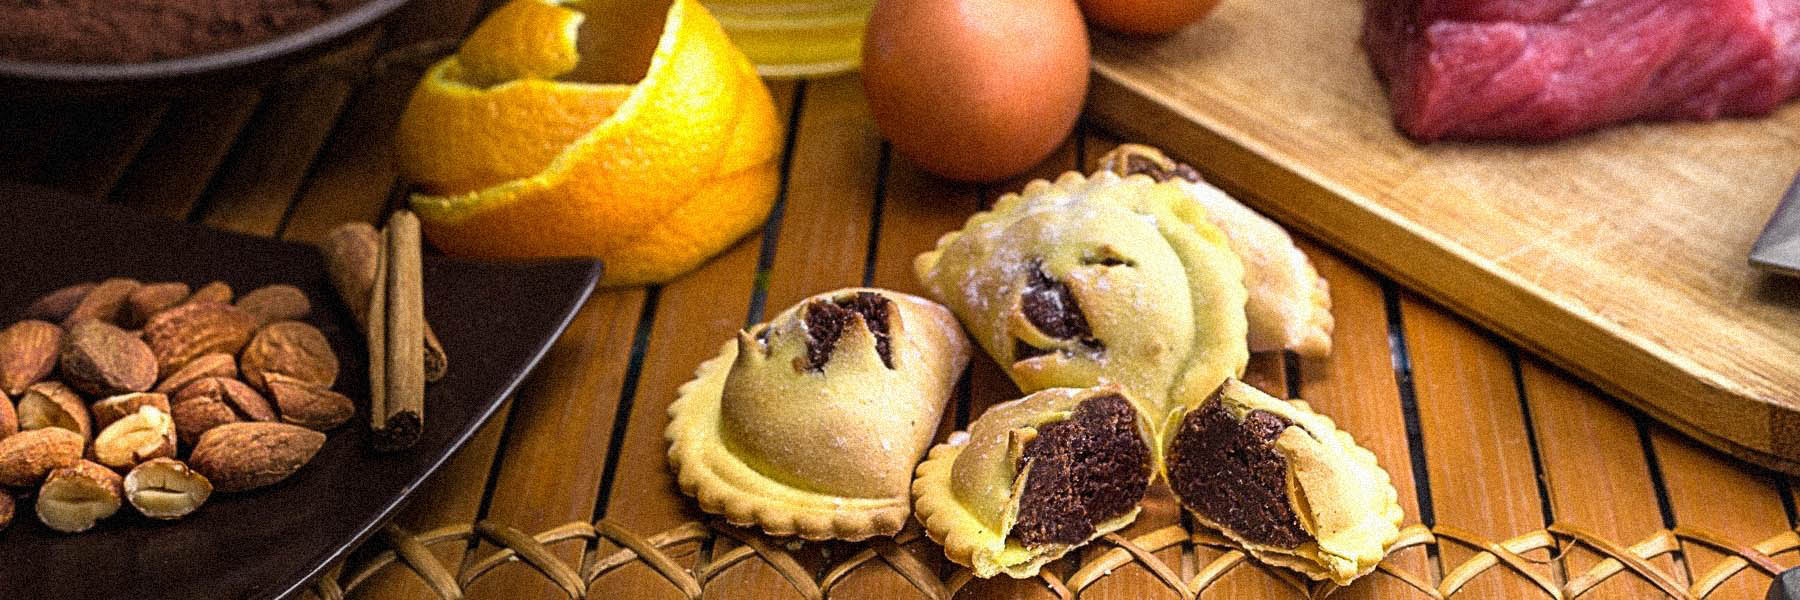 dolci tipici siciliani biscotti kit cannoli siciliani online cassata siciliana cioccolato di modica